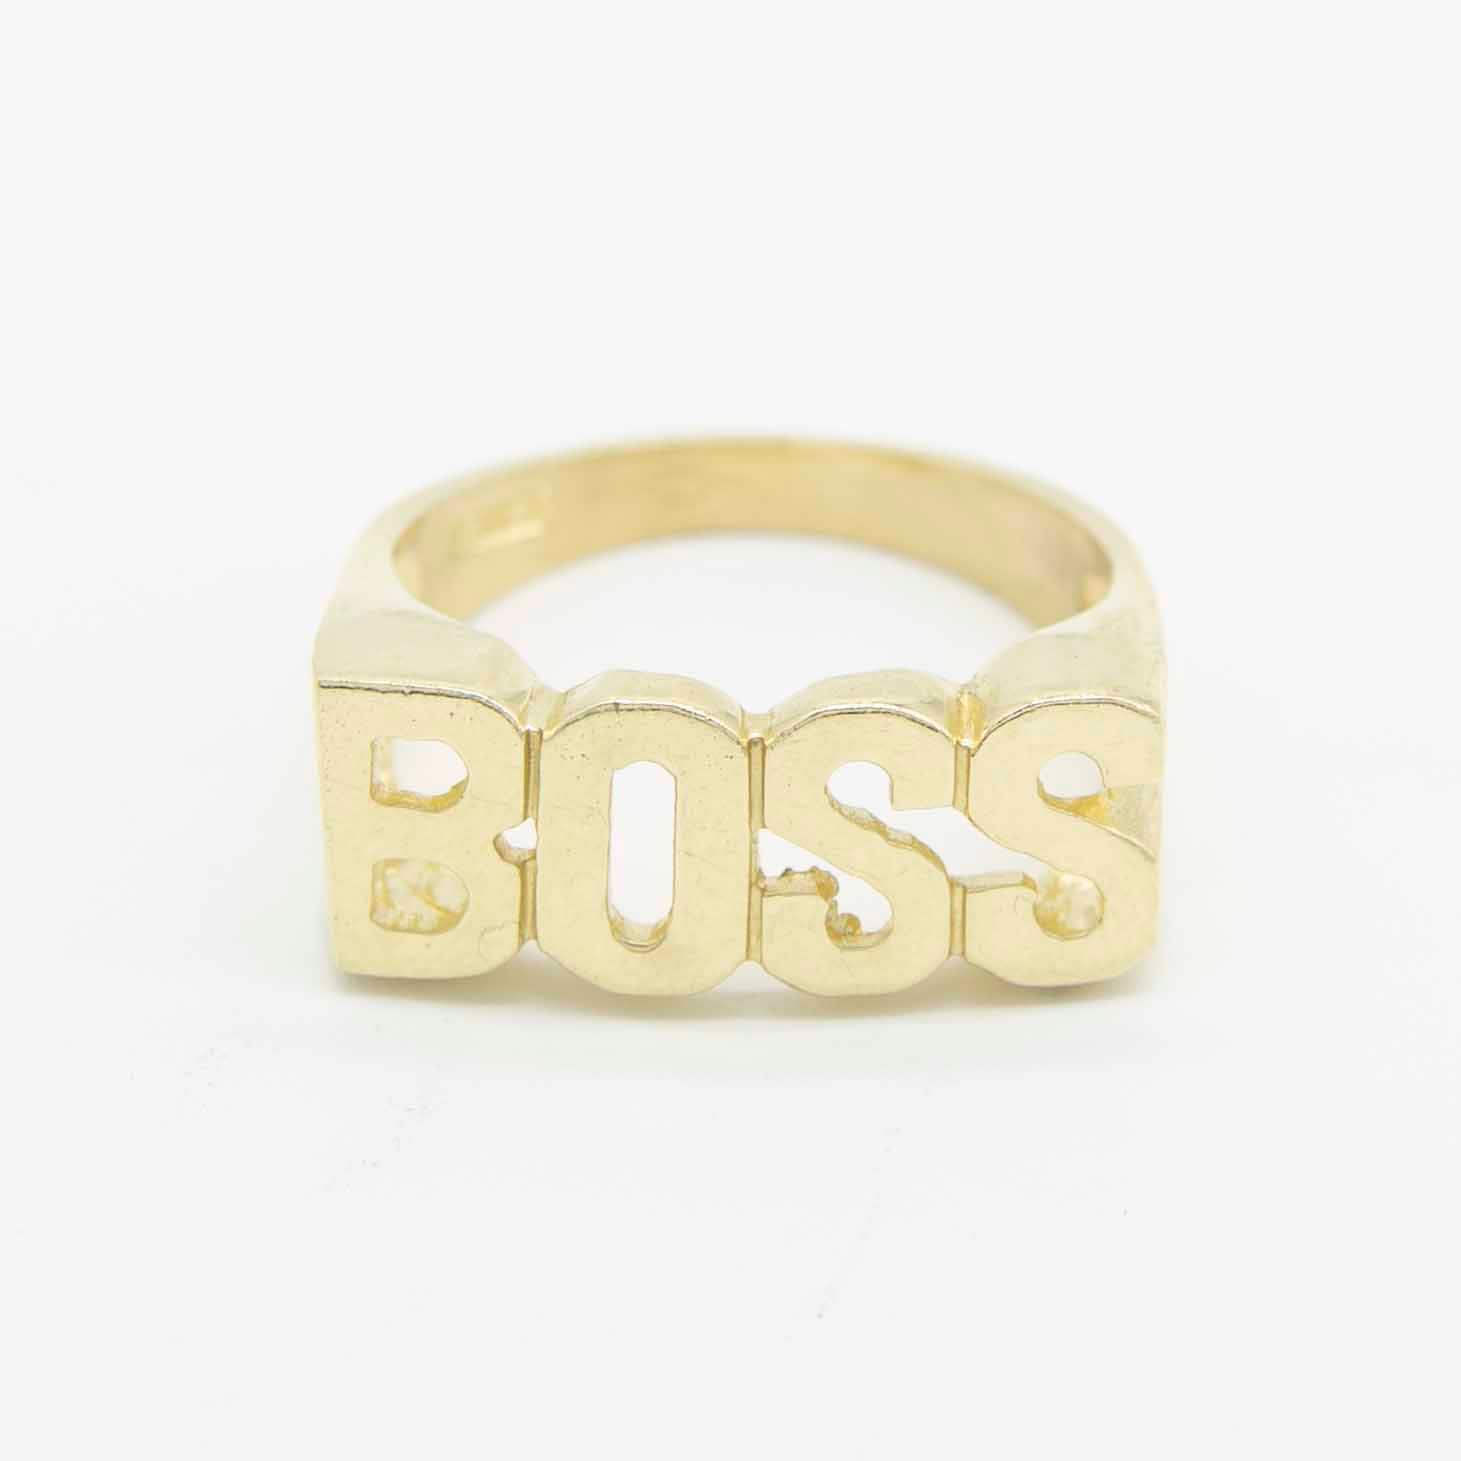 Glänzender "Boss" Ring Echt Massiv 10K Gelbgold Alle Größen von BayamJewelry